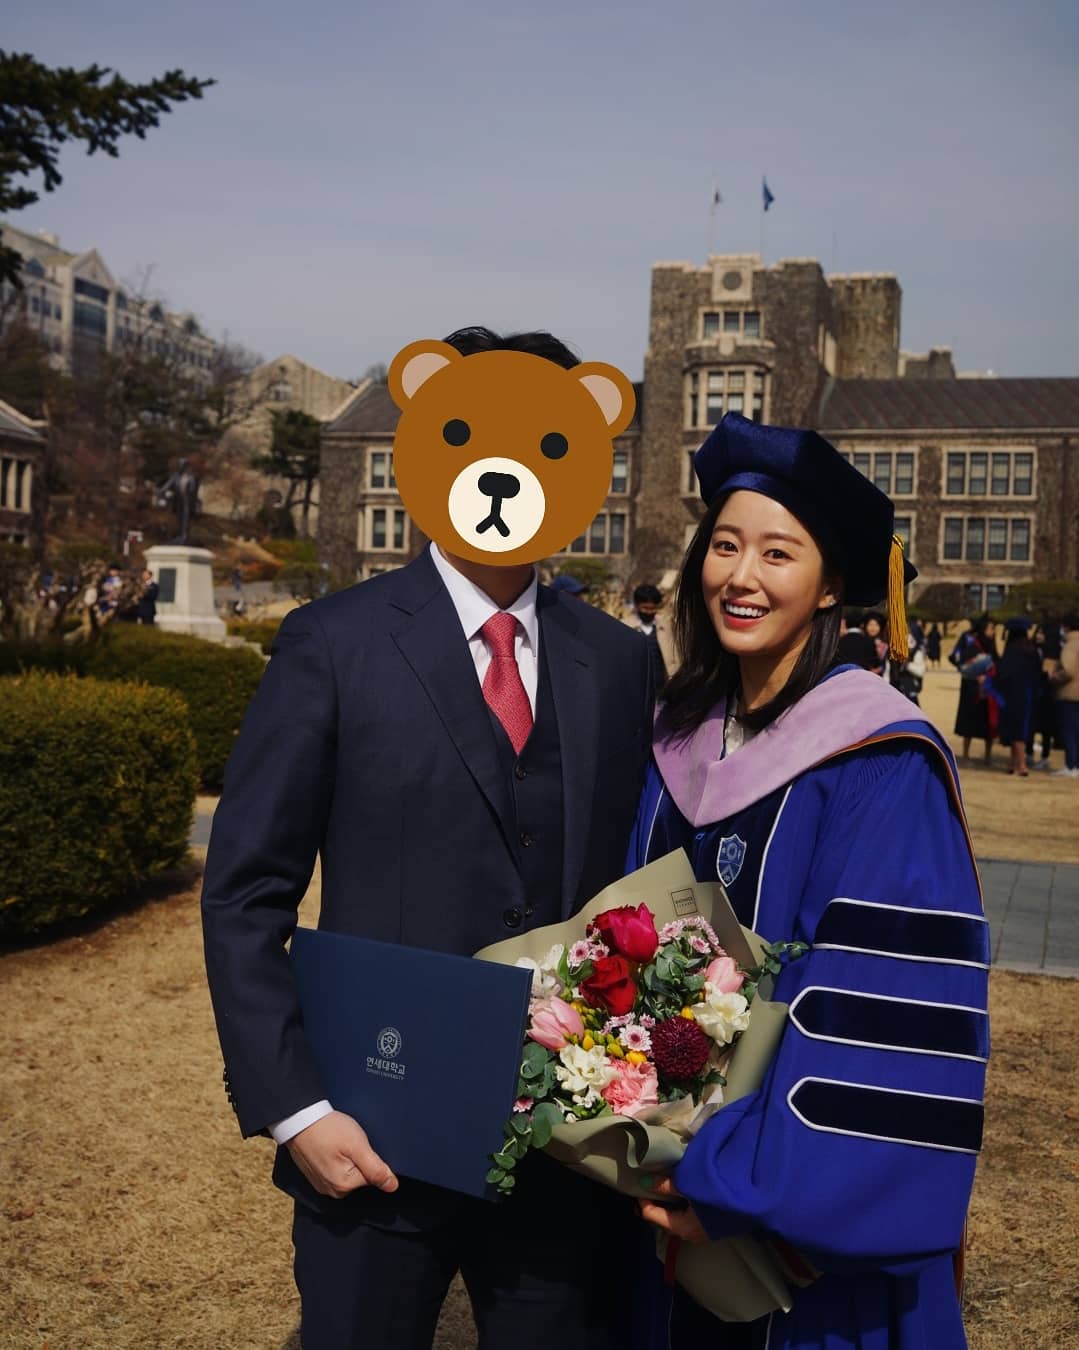 チョン・ヘビンが新婚夫と記念写真「大学院卒業おめでとう」